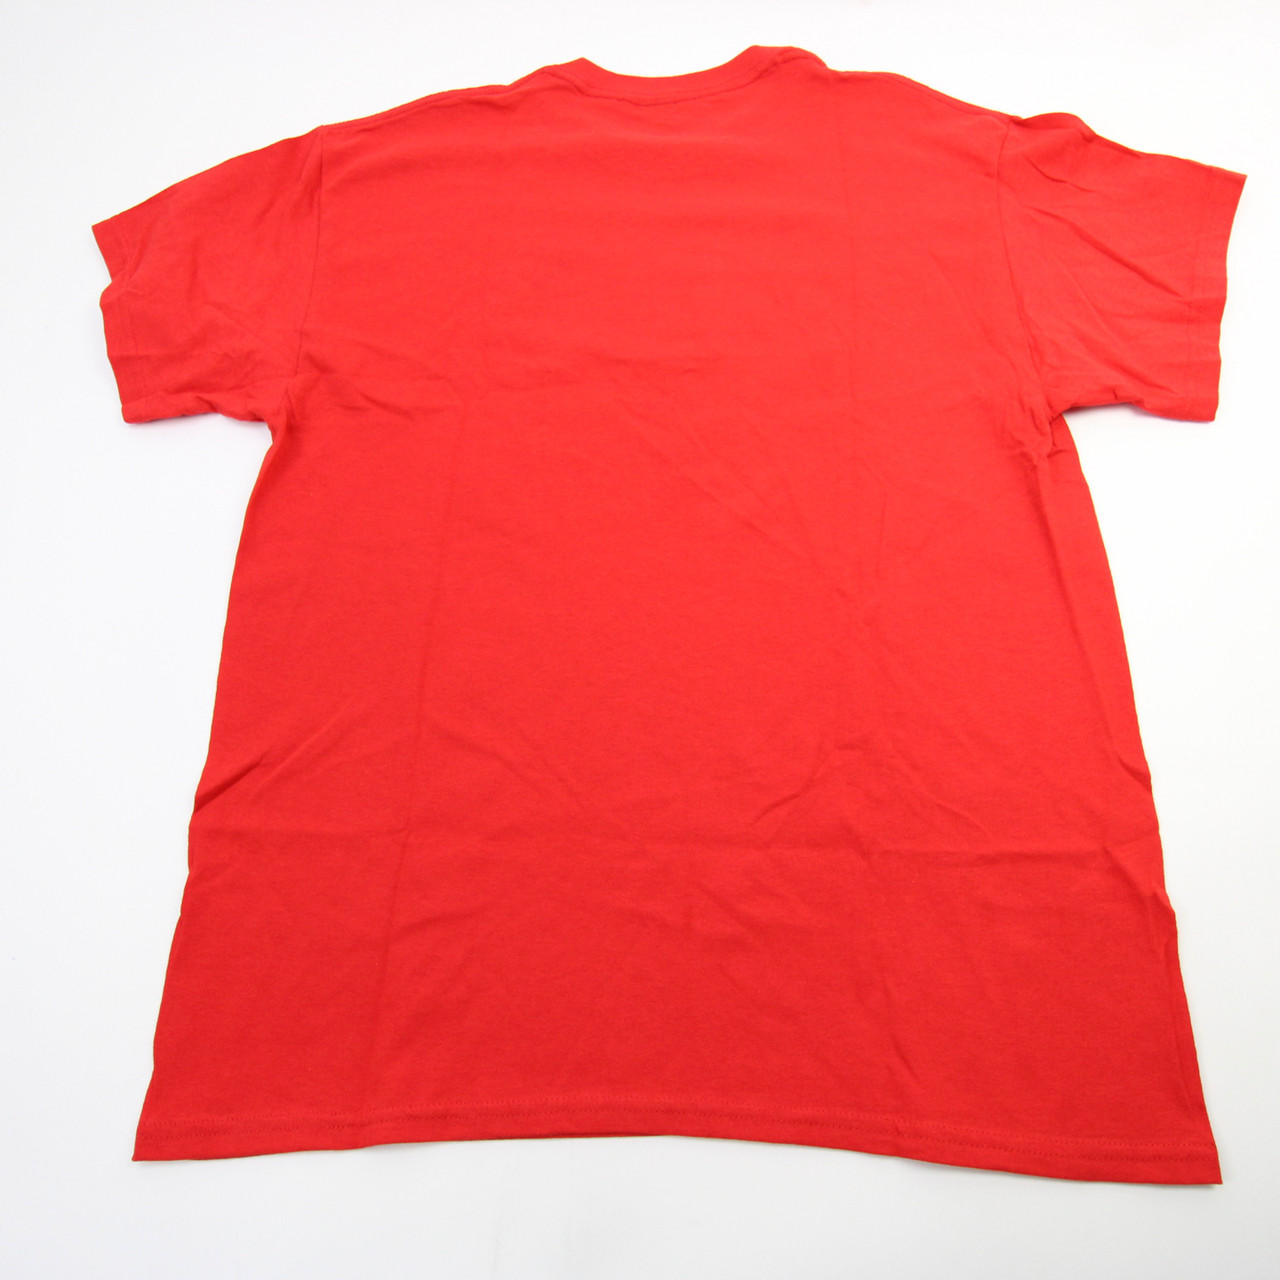 Gildan Louisville Cardinals Shirt Men Large Red Short Sleeve Cotton  Basketball j